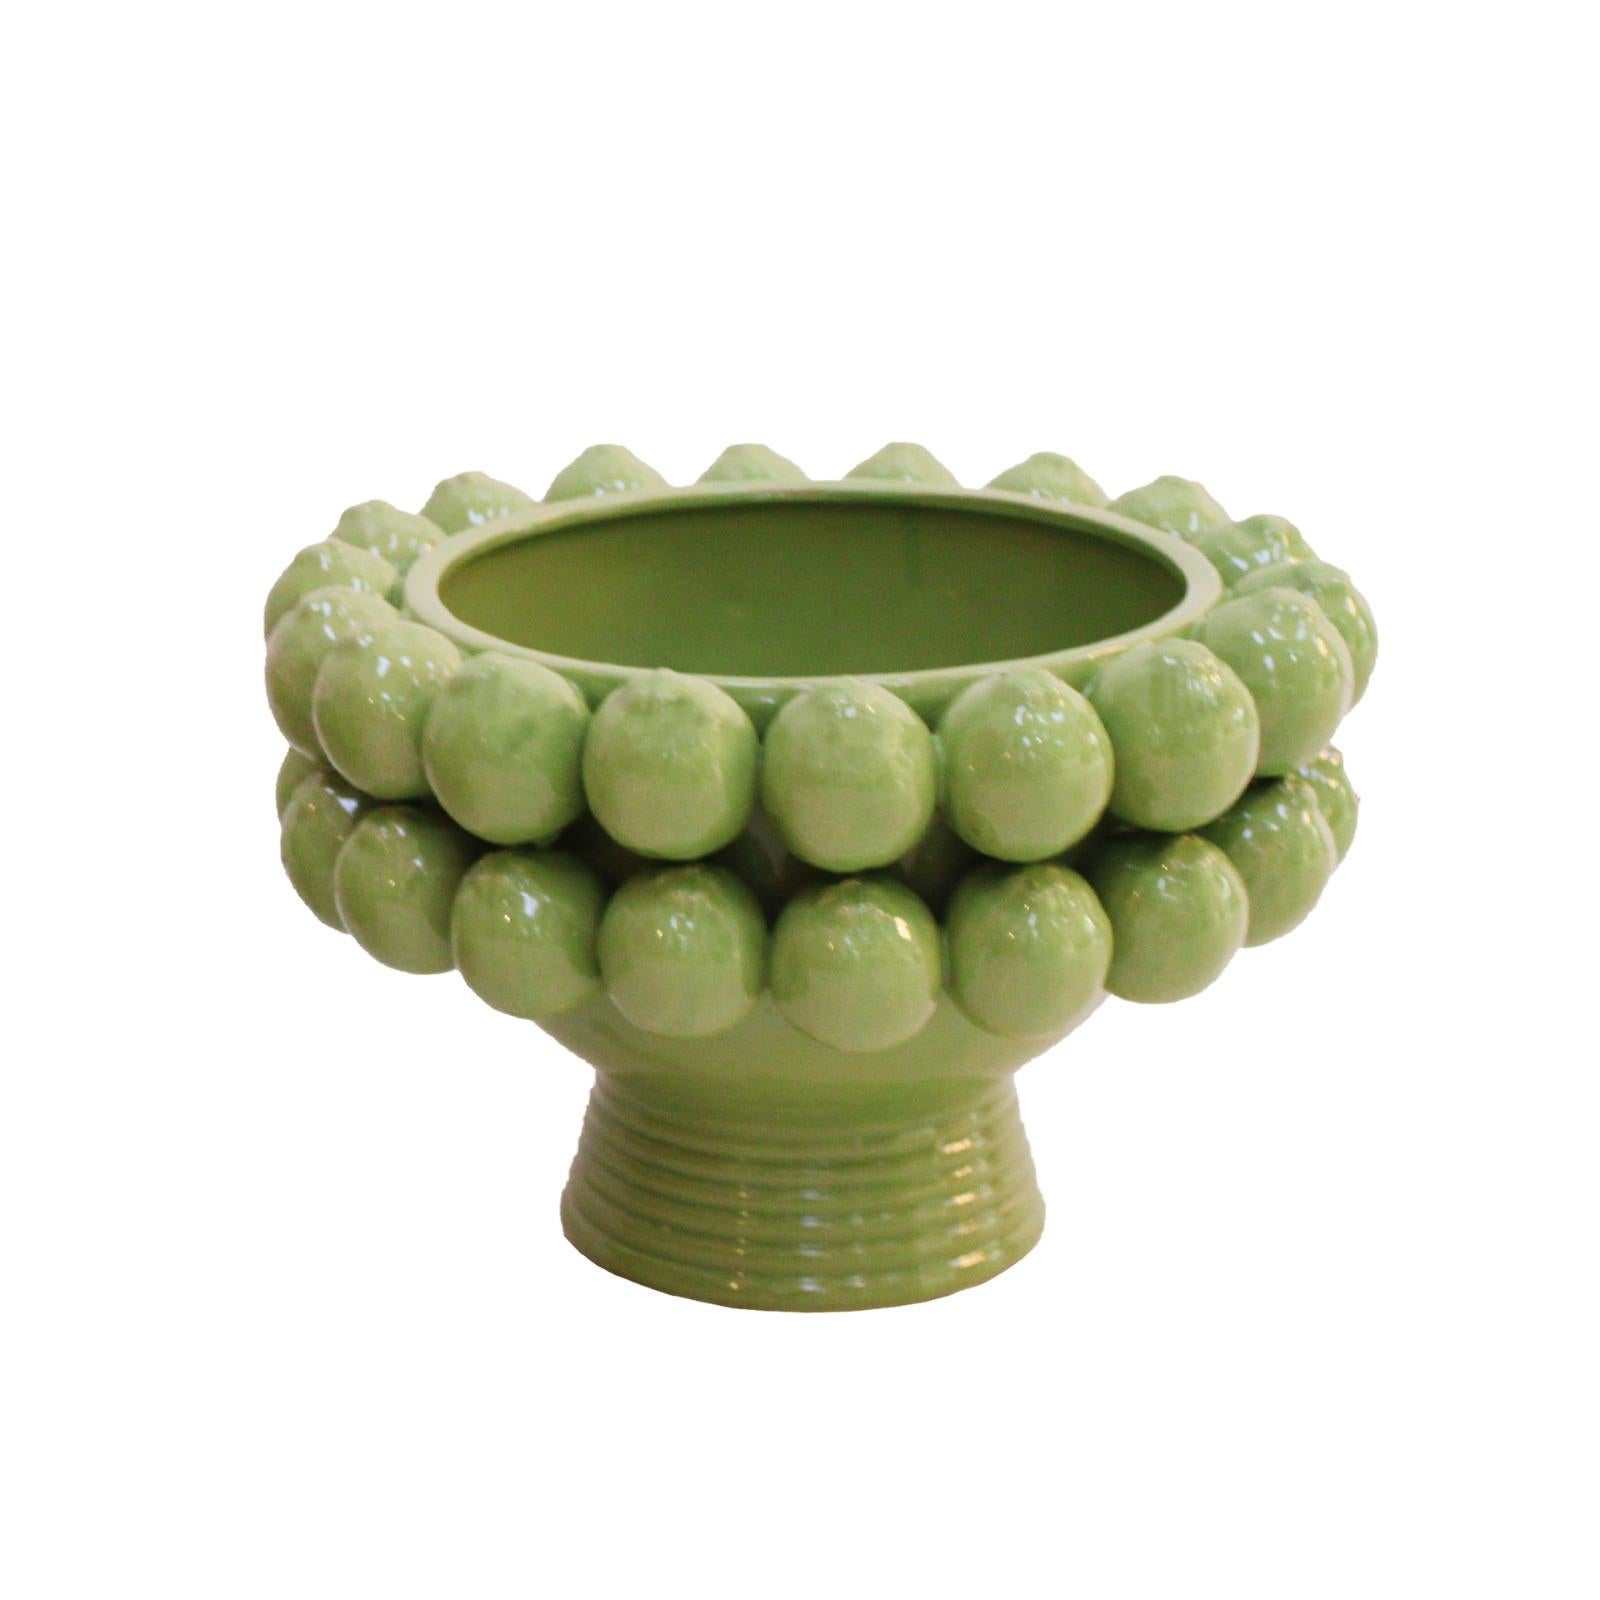 Handgefertigte Vase aus glasierter Keramik mit traditionellen Motiven aus Süditalien.